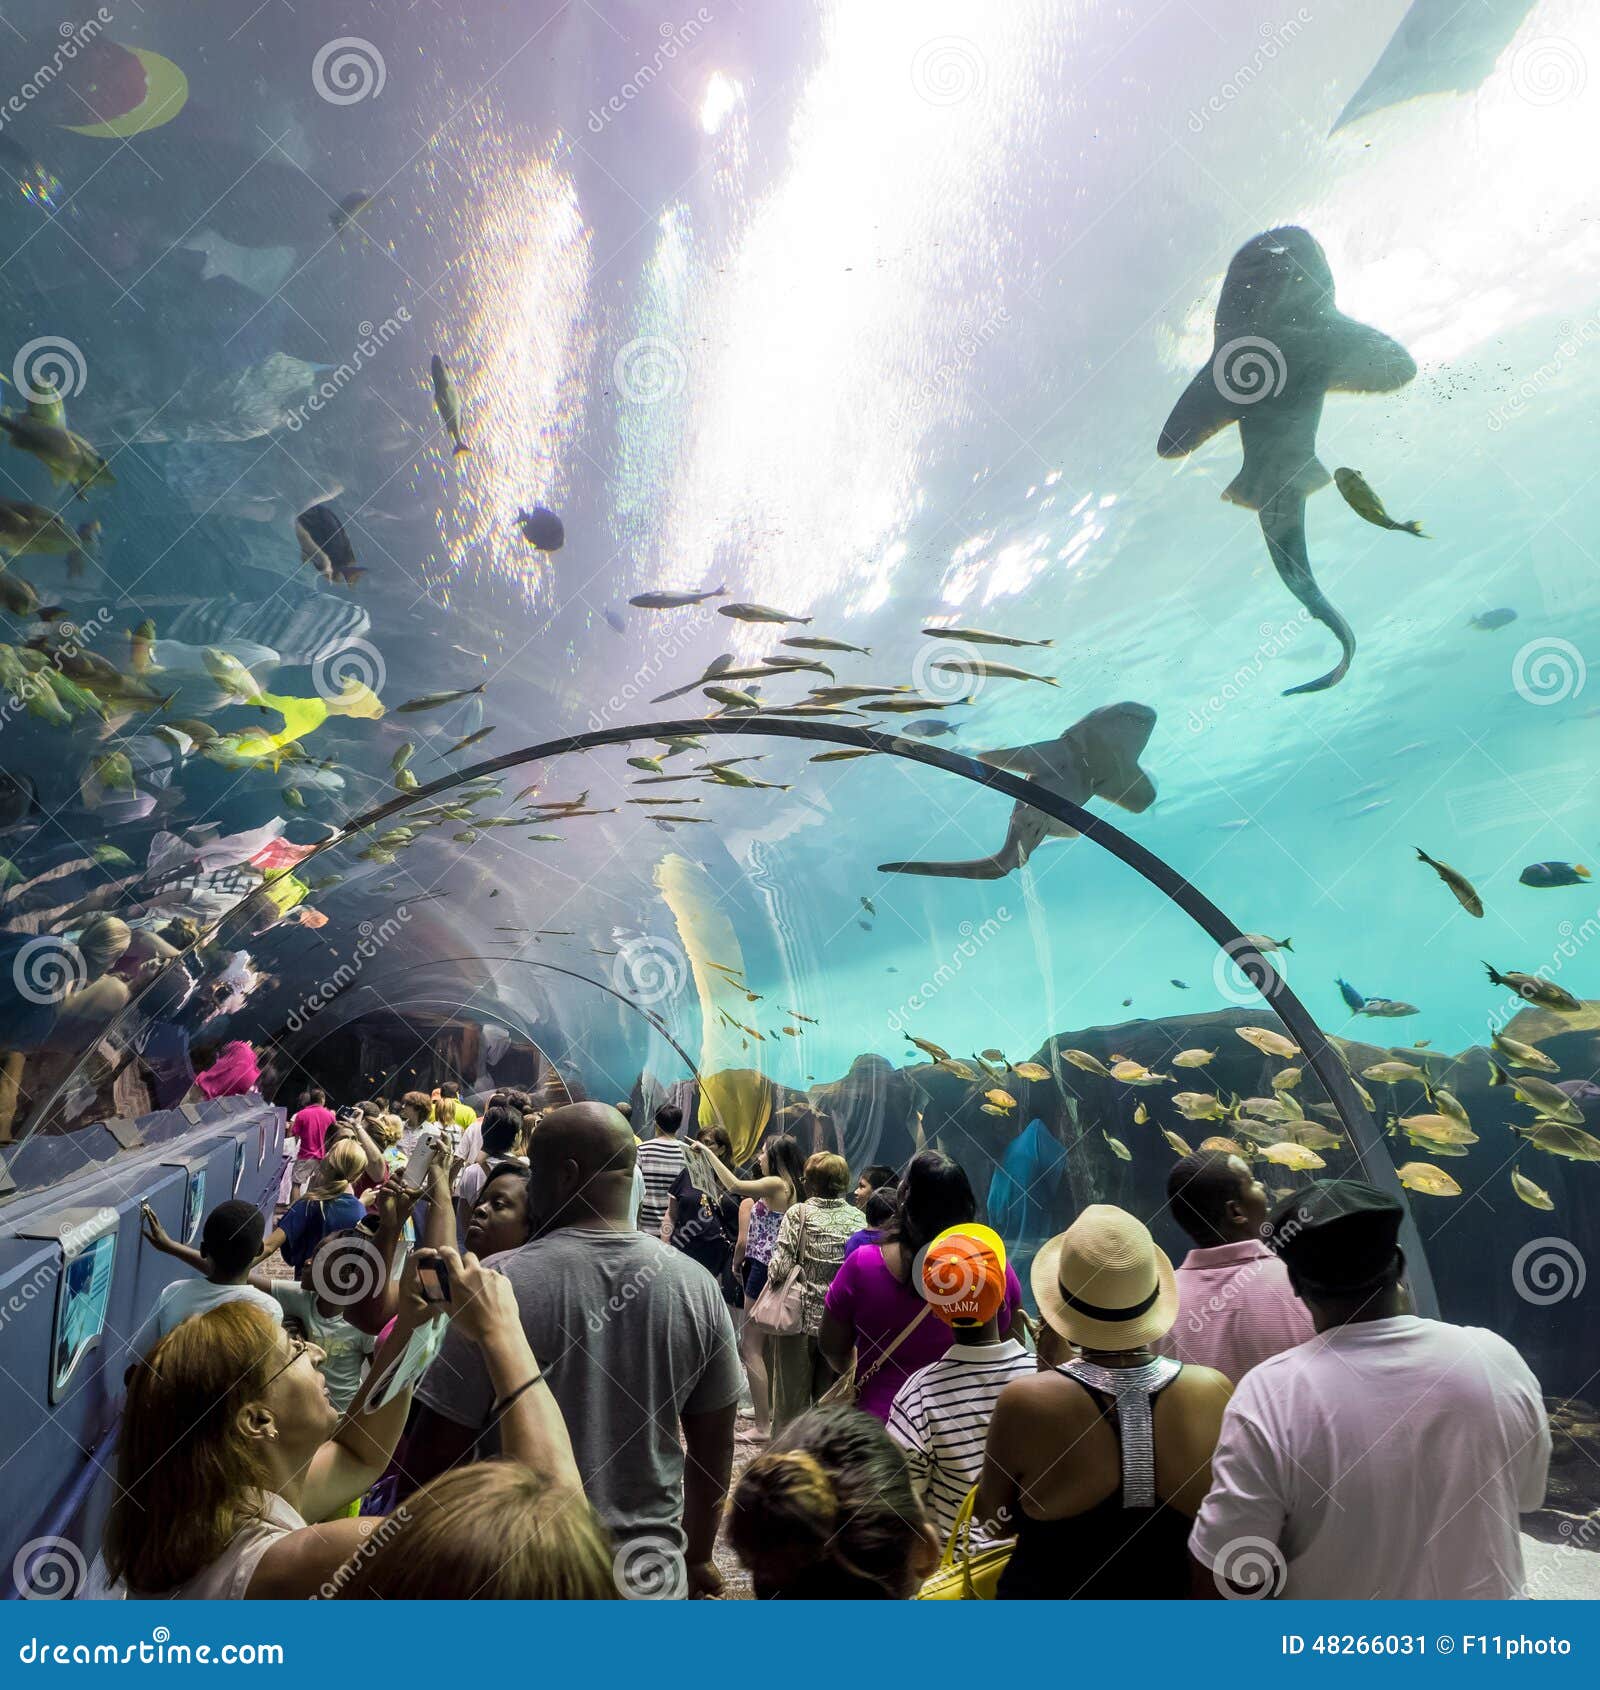 Interior of Georgia Aquarium with the People Editorial Photo - Image of ...